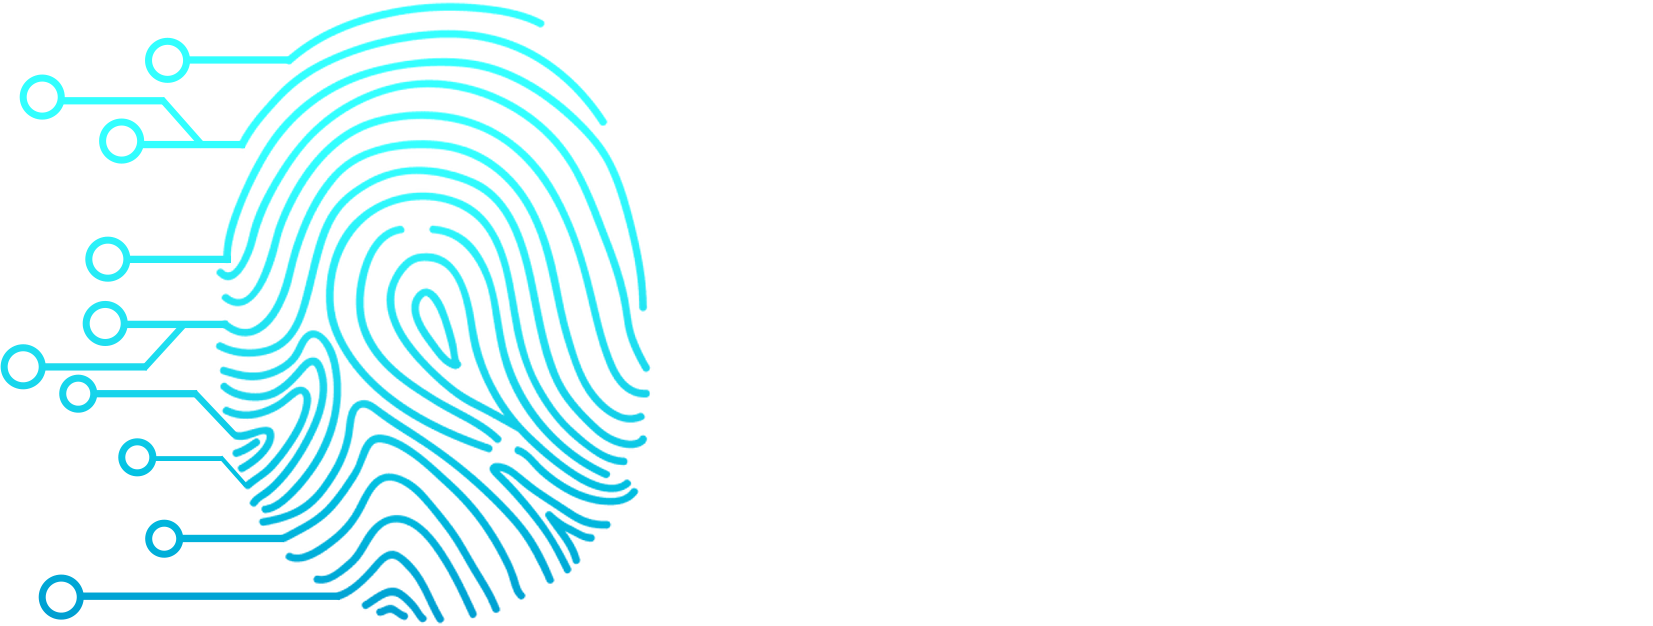 NovusScientia Lo